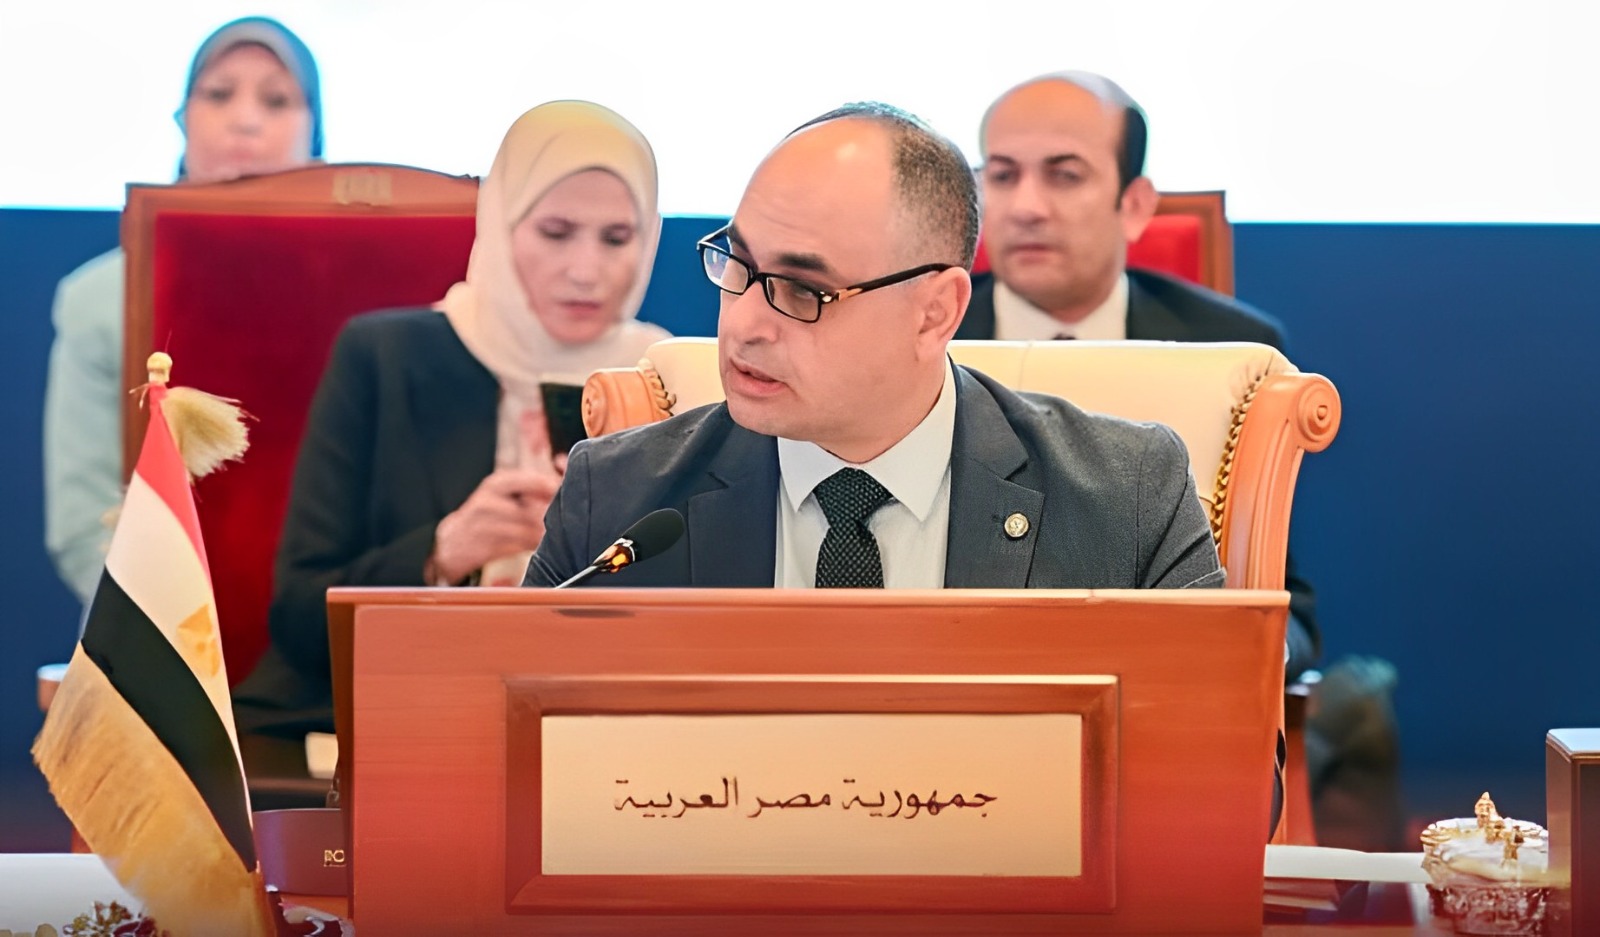 فوز مصر بمنصب الرئيس التنفيذي للمكتب التنفيذي لمجلس الوزراء العرب